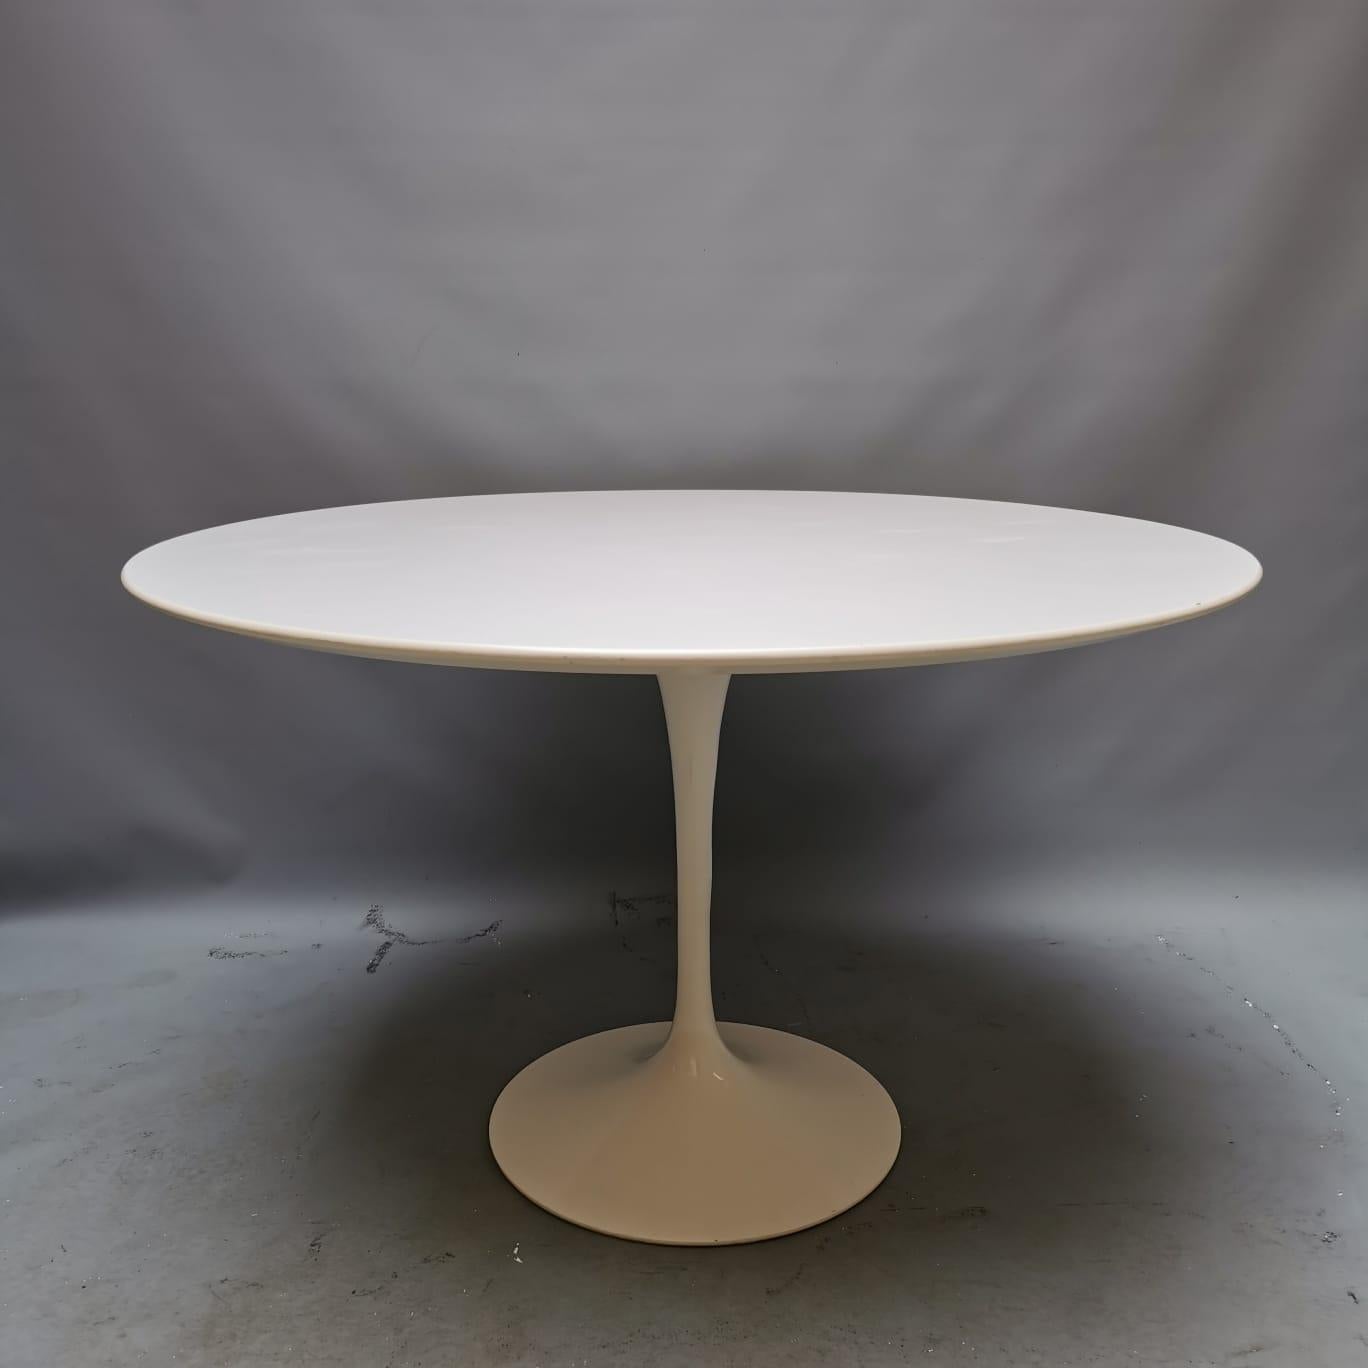 Il s'agit peut-être de l'une des tables les plus connues de l'histoire du design, projet novateur d'Eero Saarinen des années 1950. Où que vous alliez mettre cette table, elle sera capable de créer un environnement unique et élégant. L'objet produit